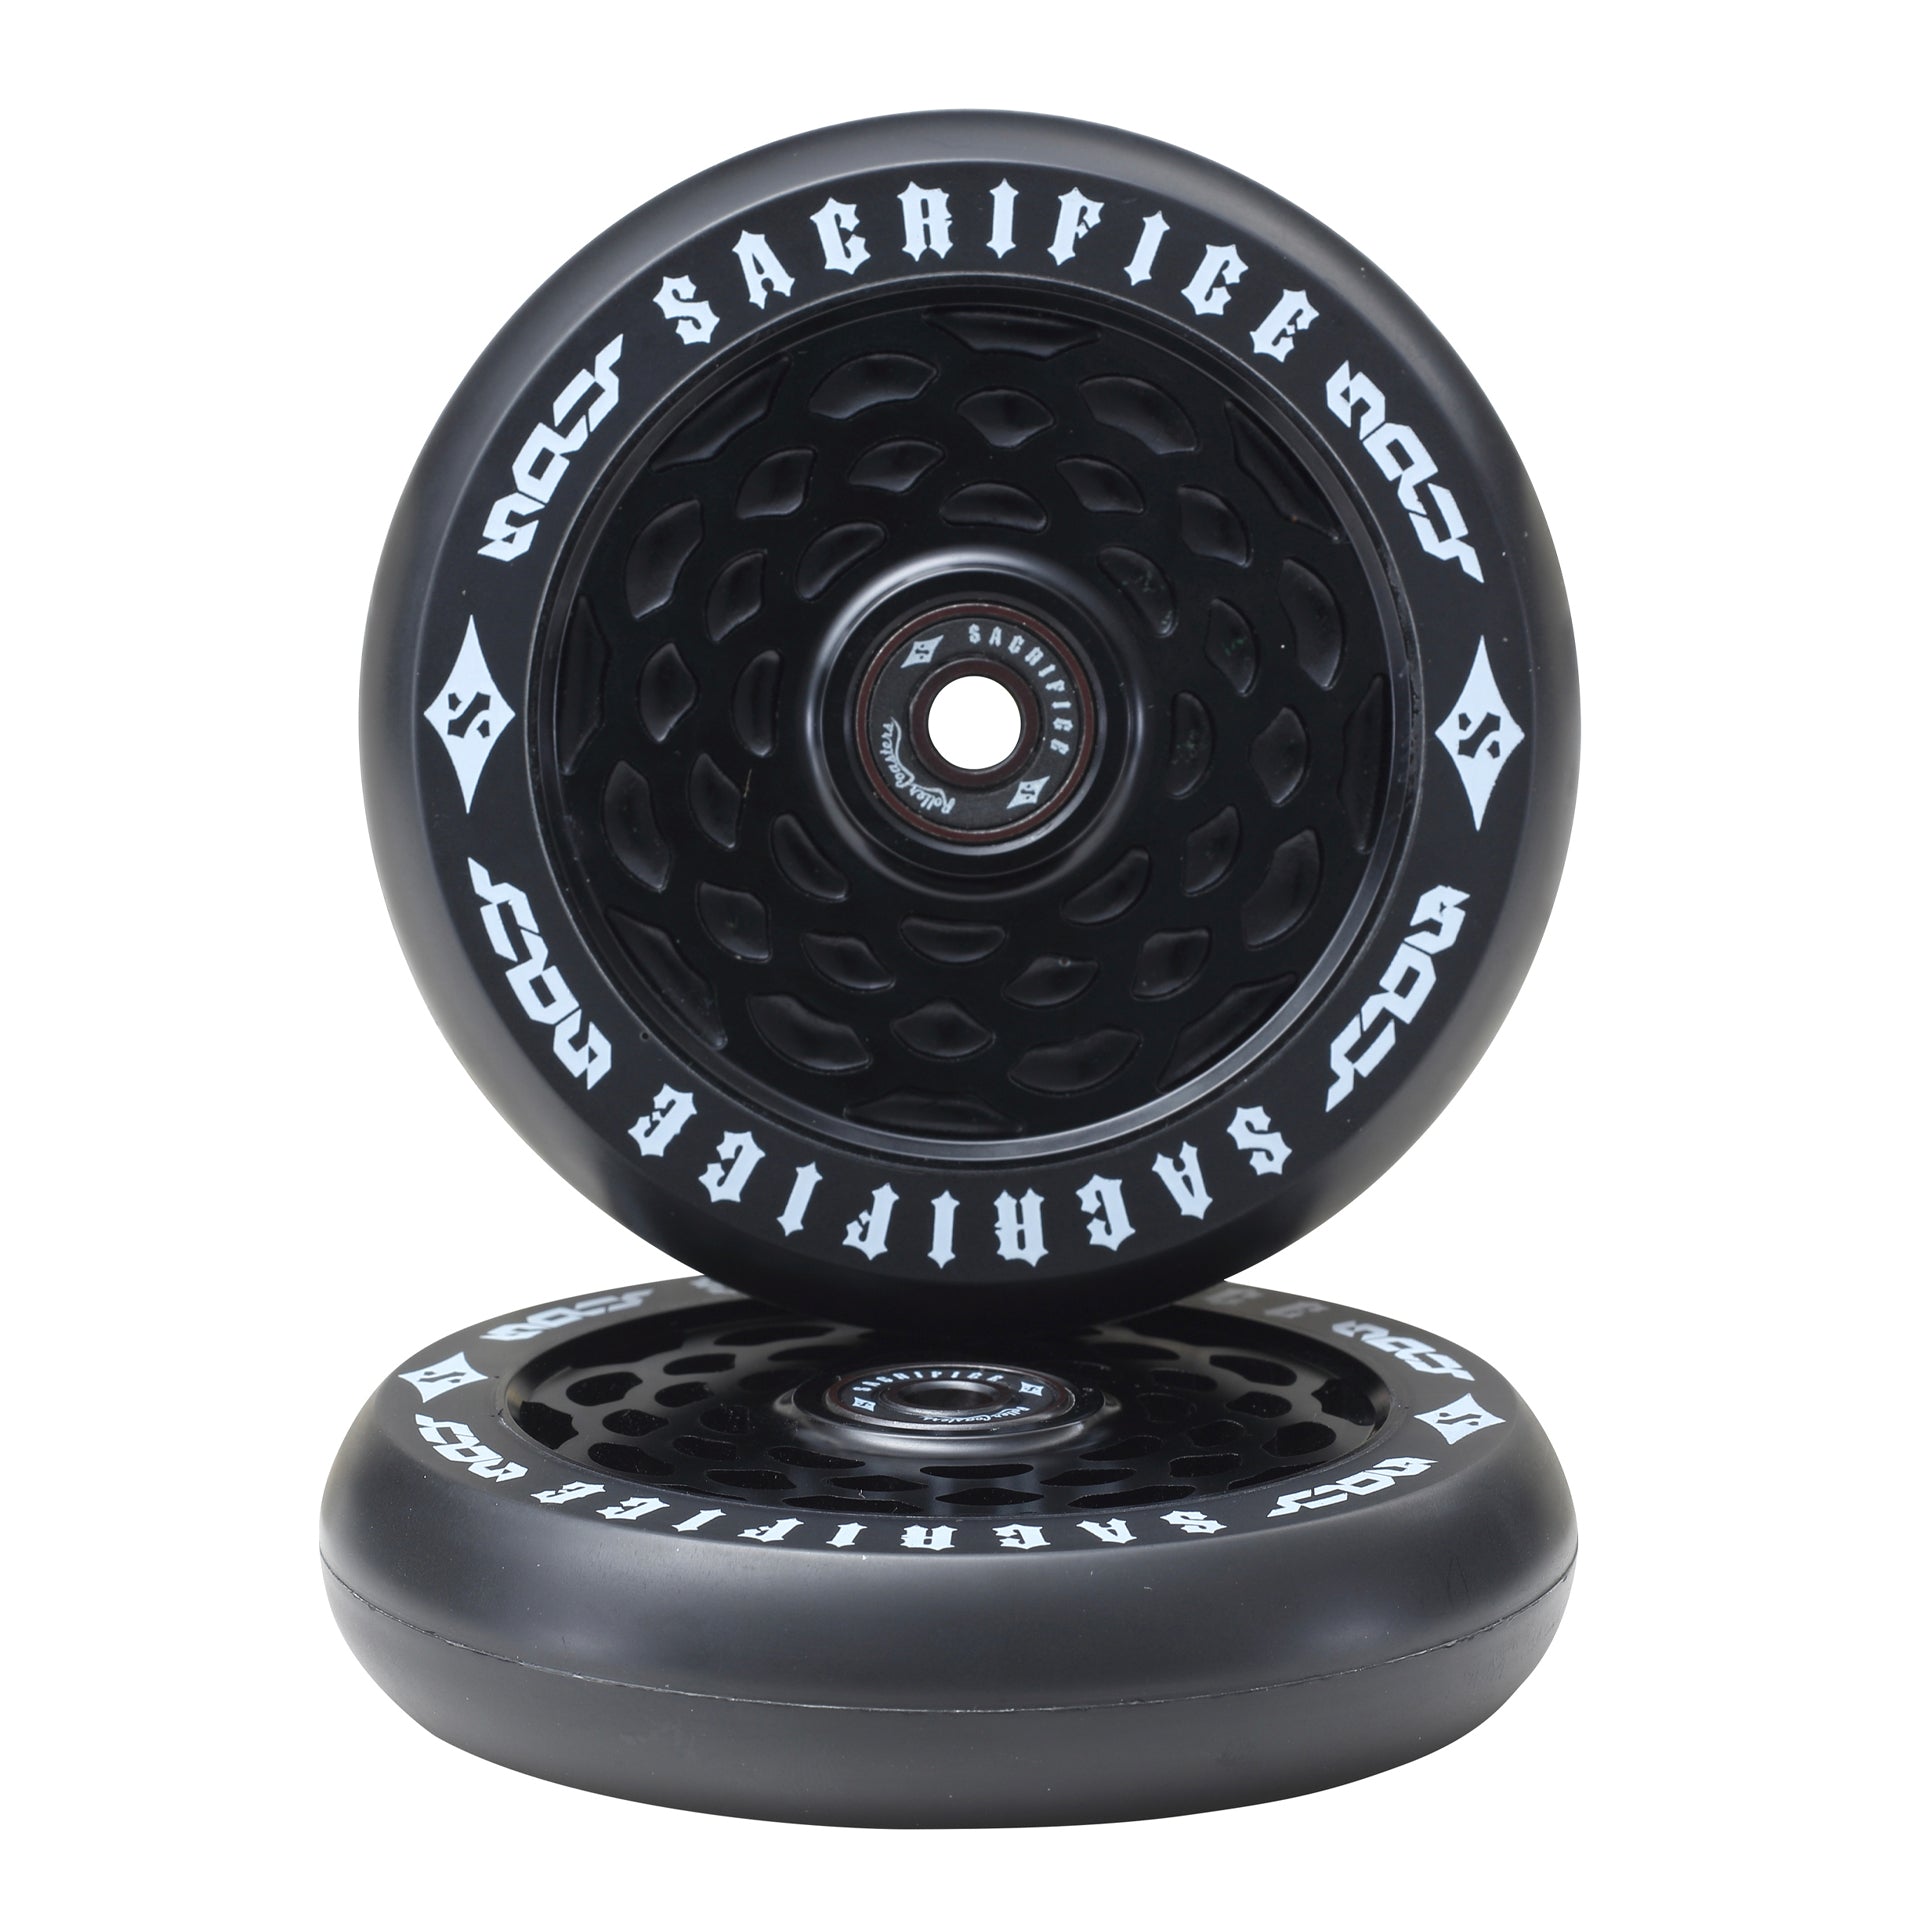 Sacrifice Spy Peephole Wheels 110mm - Black/ Black (x 2 / Sold as a pair) - Prime Delux Store